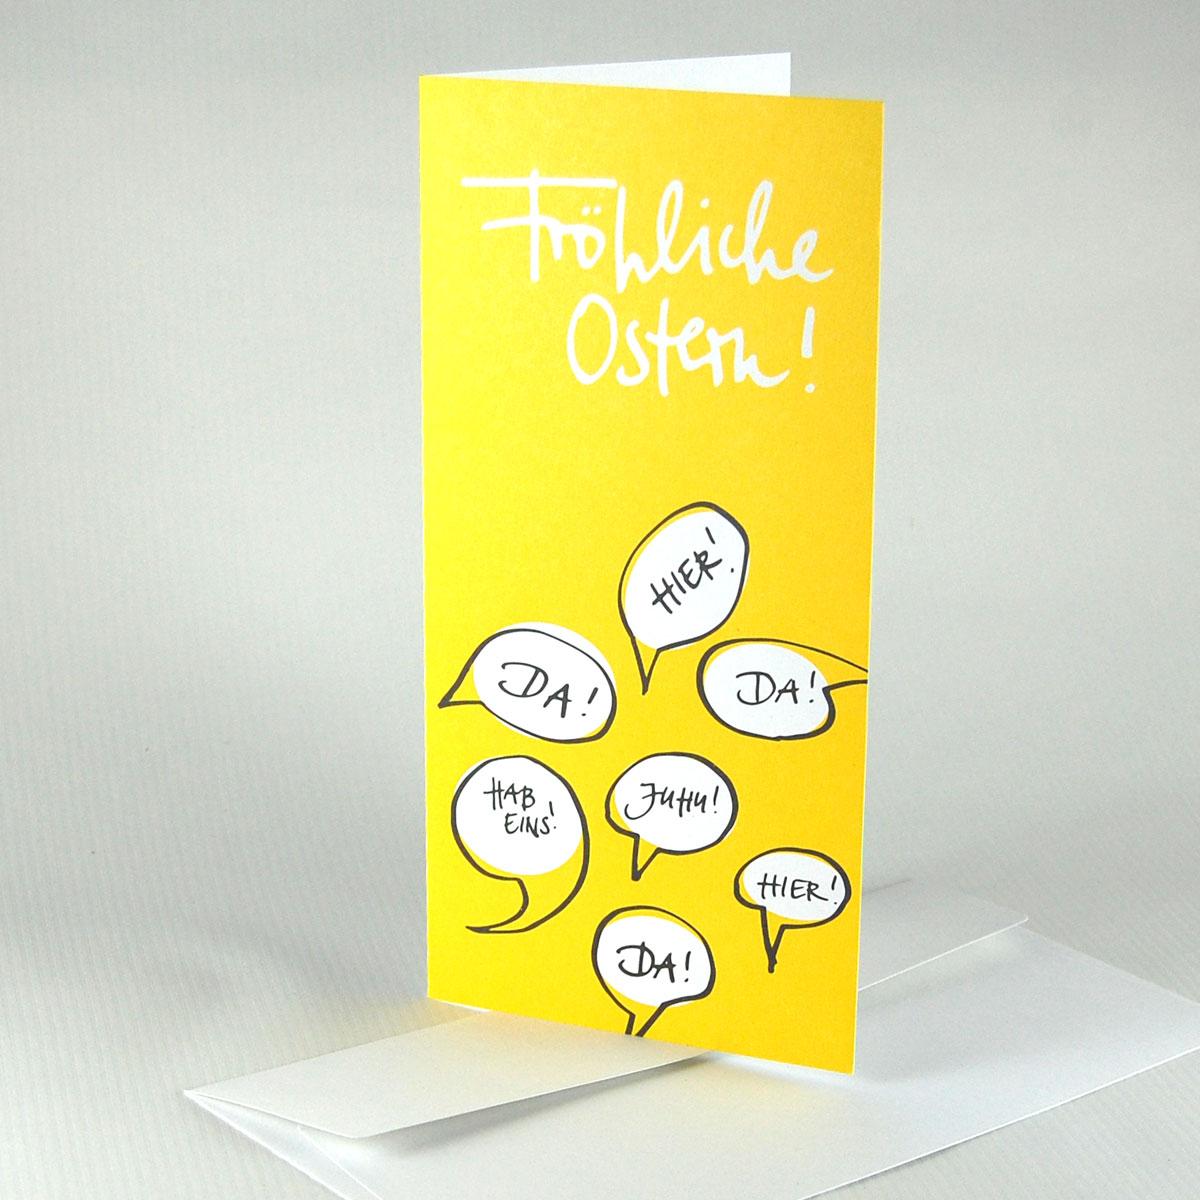 10 gelbe Recycling-Osterkarten mit Kuverts: Fröhliche Ostern!